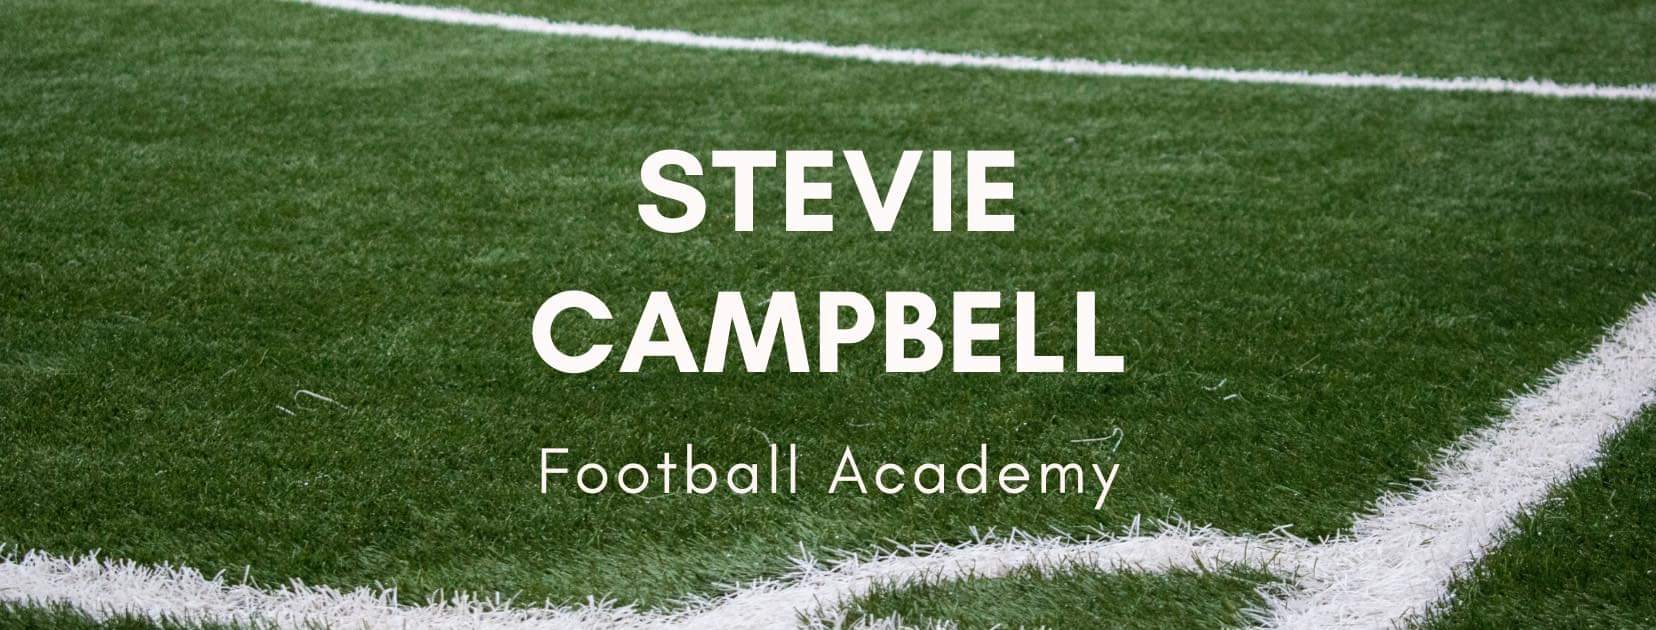 Stevie Campbell Football Academy